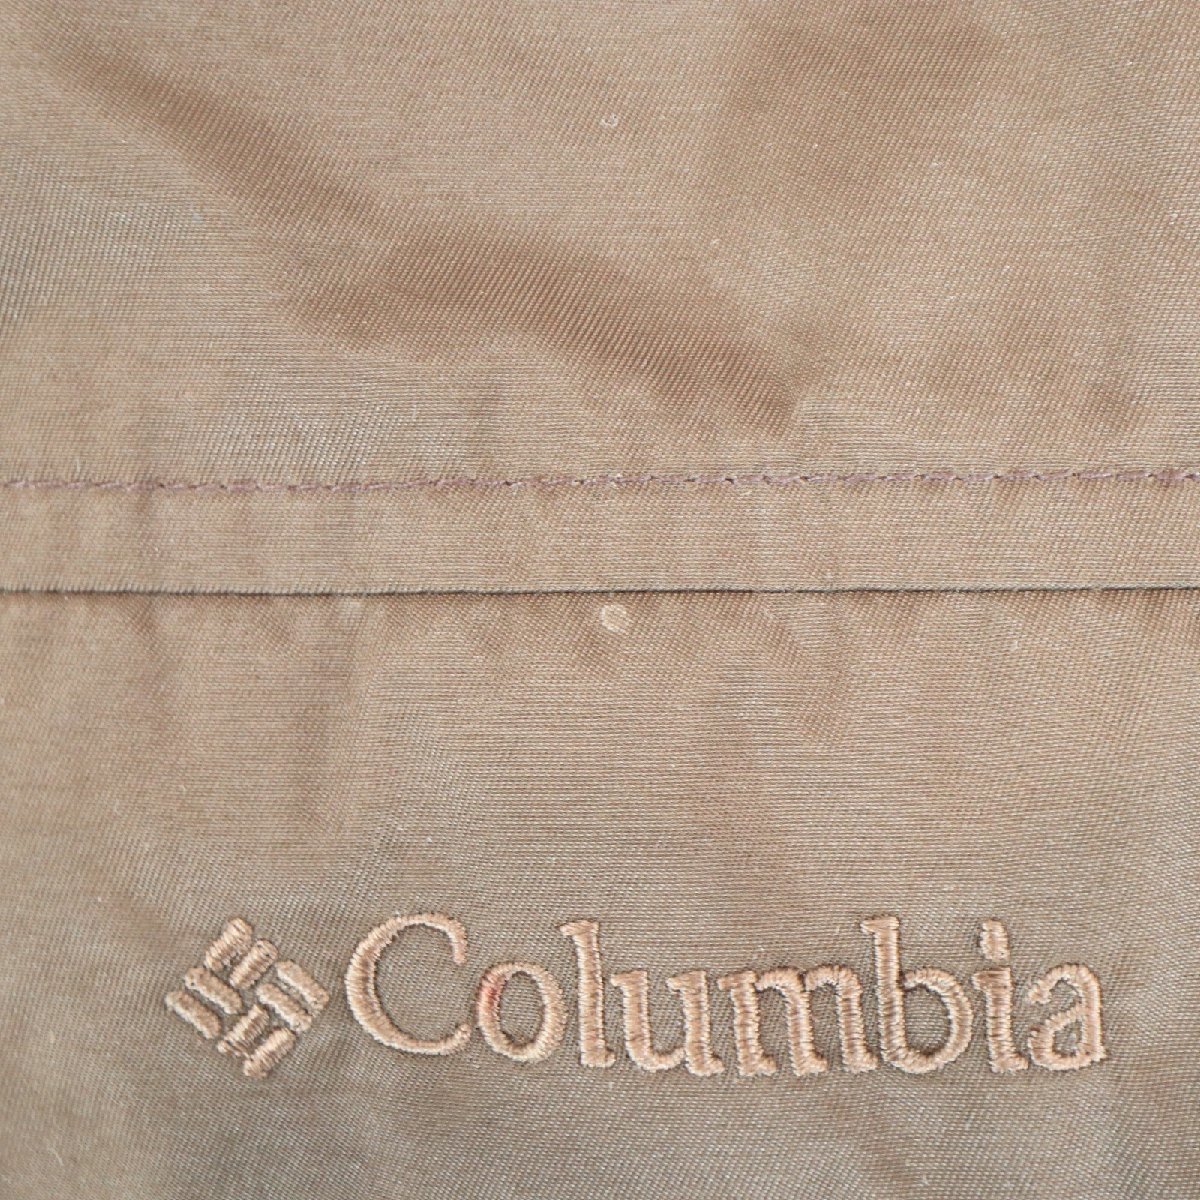 Columbia コロンビア ダウンベスト ナイロンベスト アウトドア キャンプ 防寒 アウター ブラウン ( レディース M ) 中古 古着 N2998_画像3